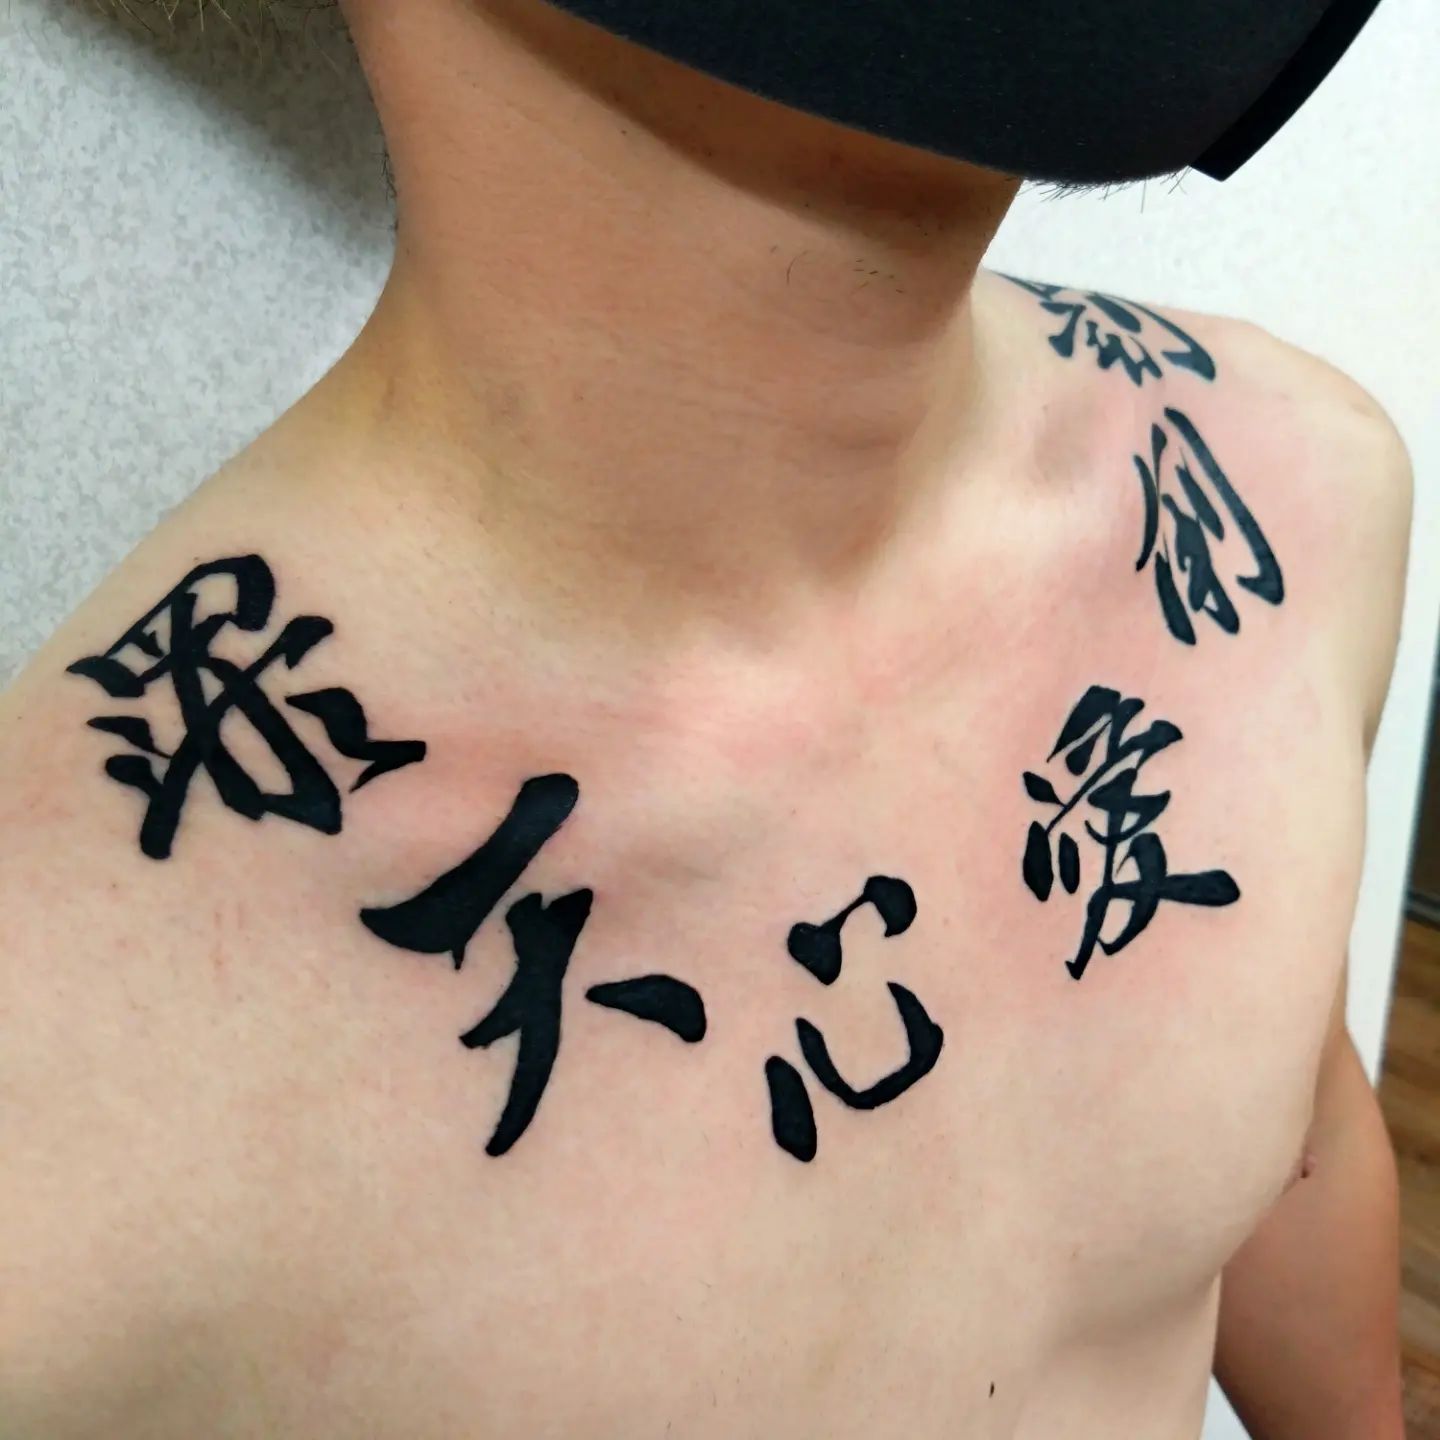 Japanse Woord Tattoo rond nek voor mannen